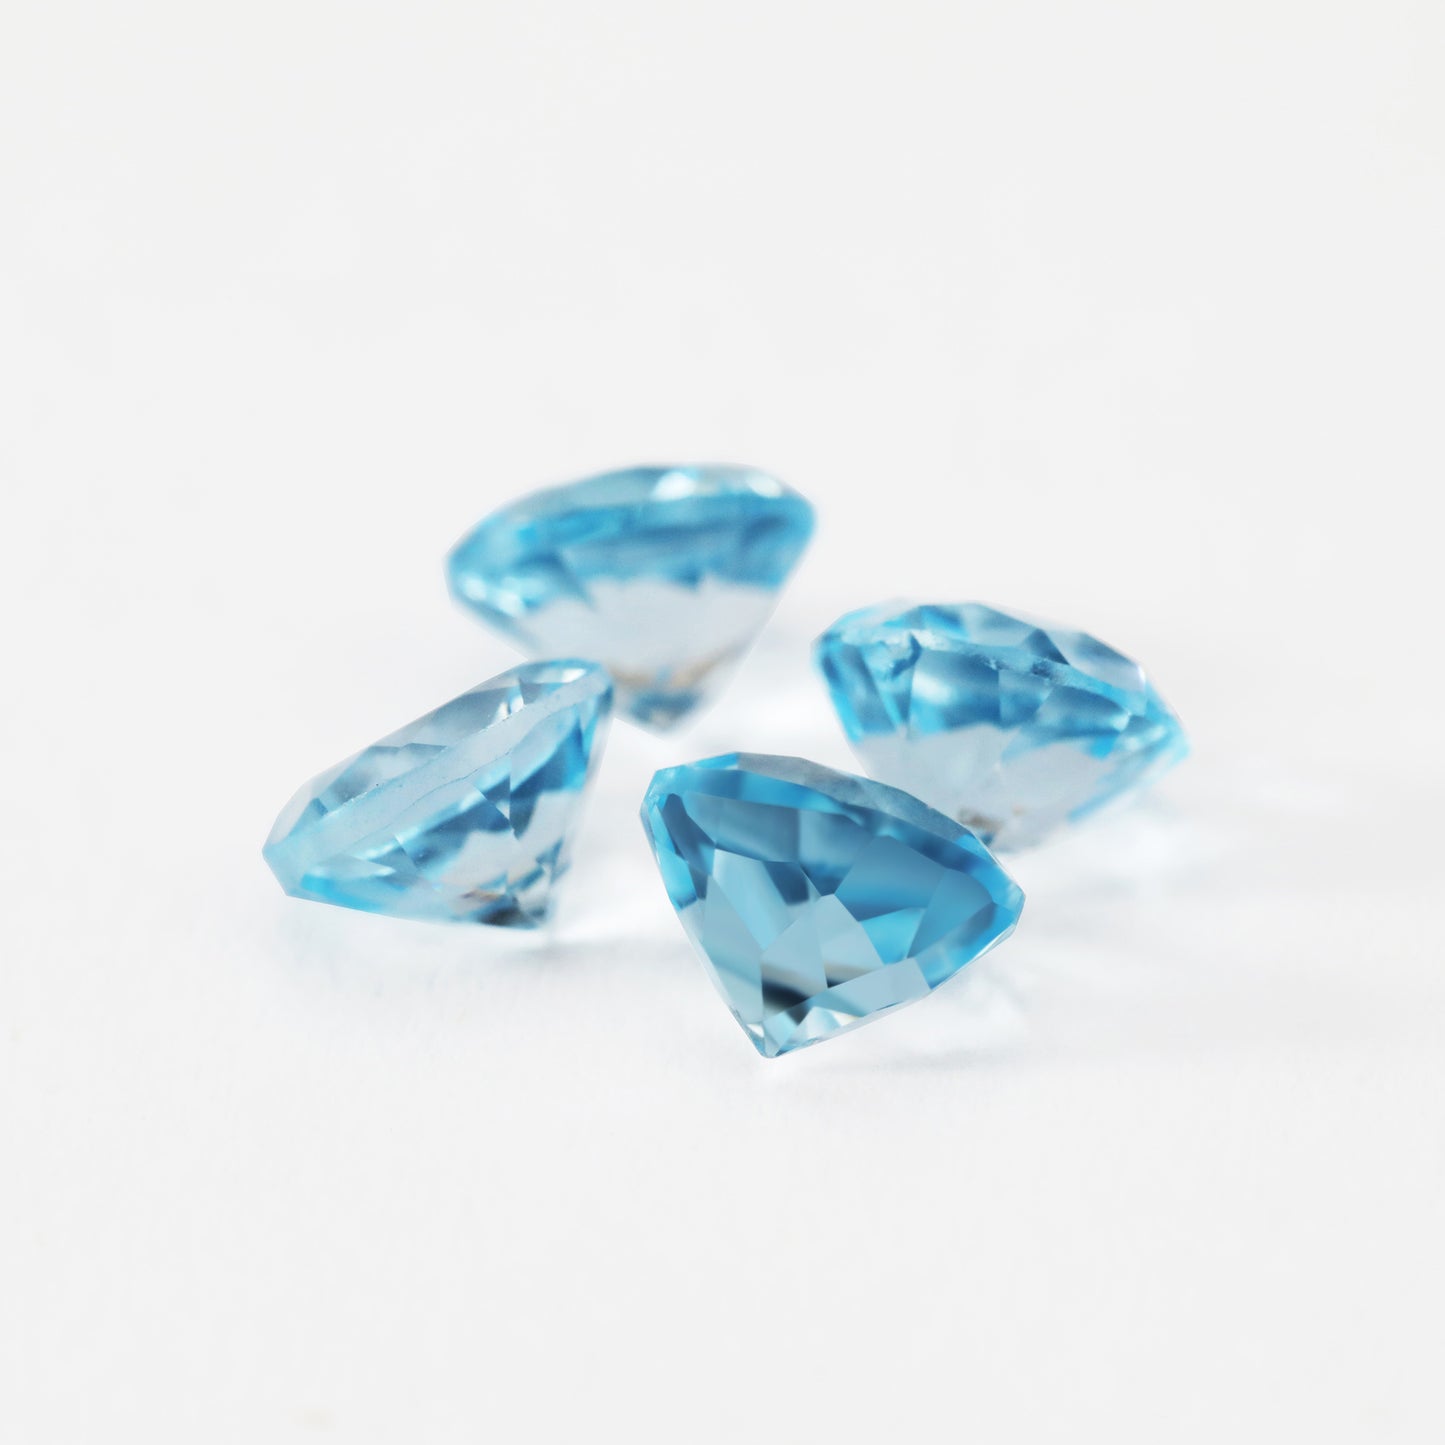 Four round blue sky blue topaz gems.